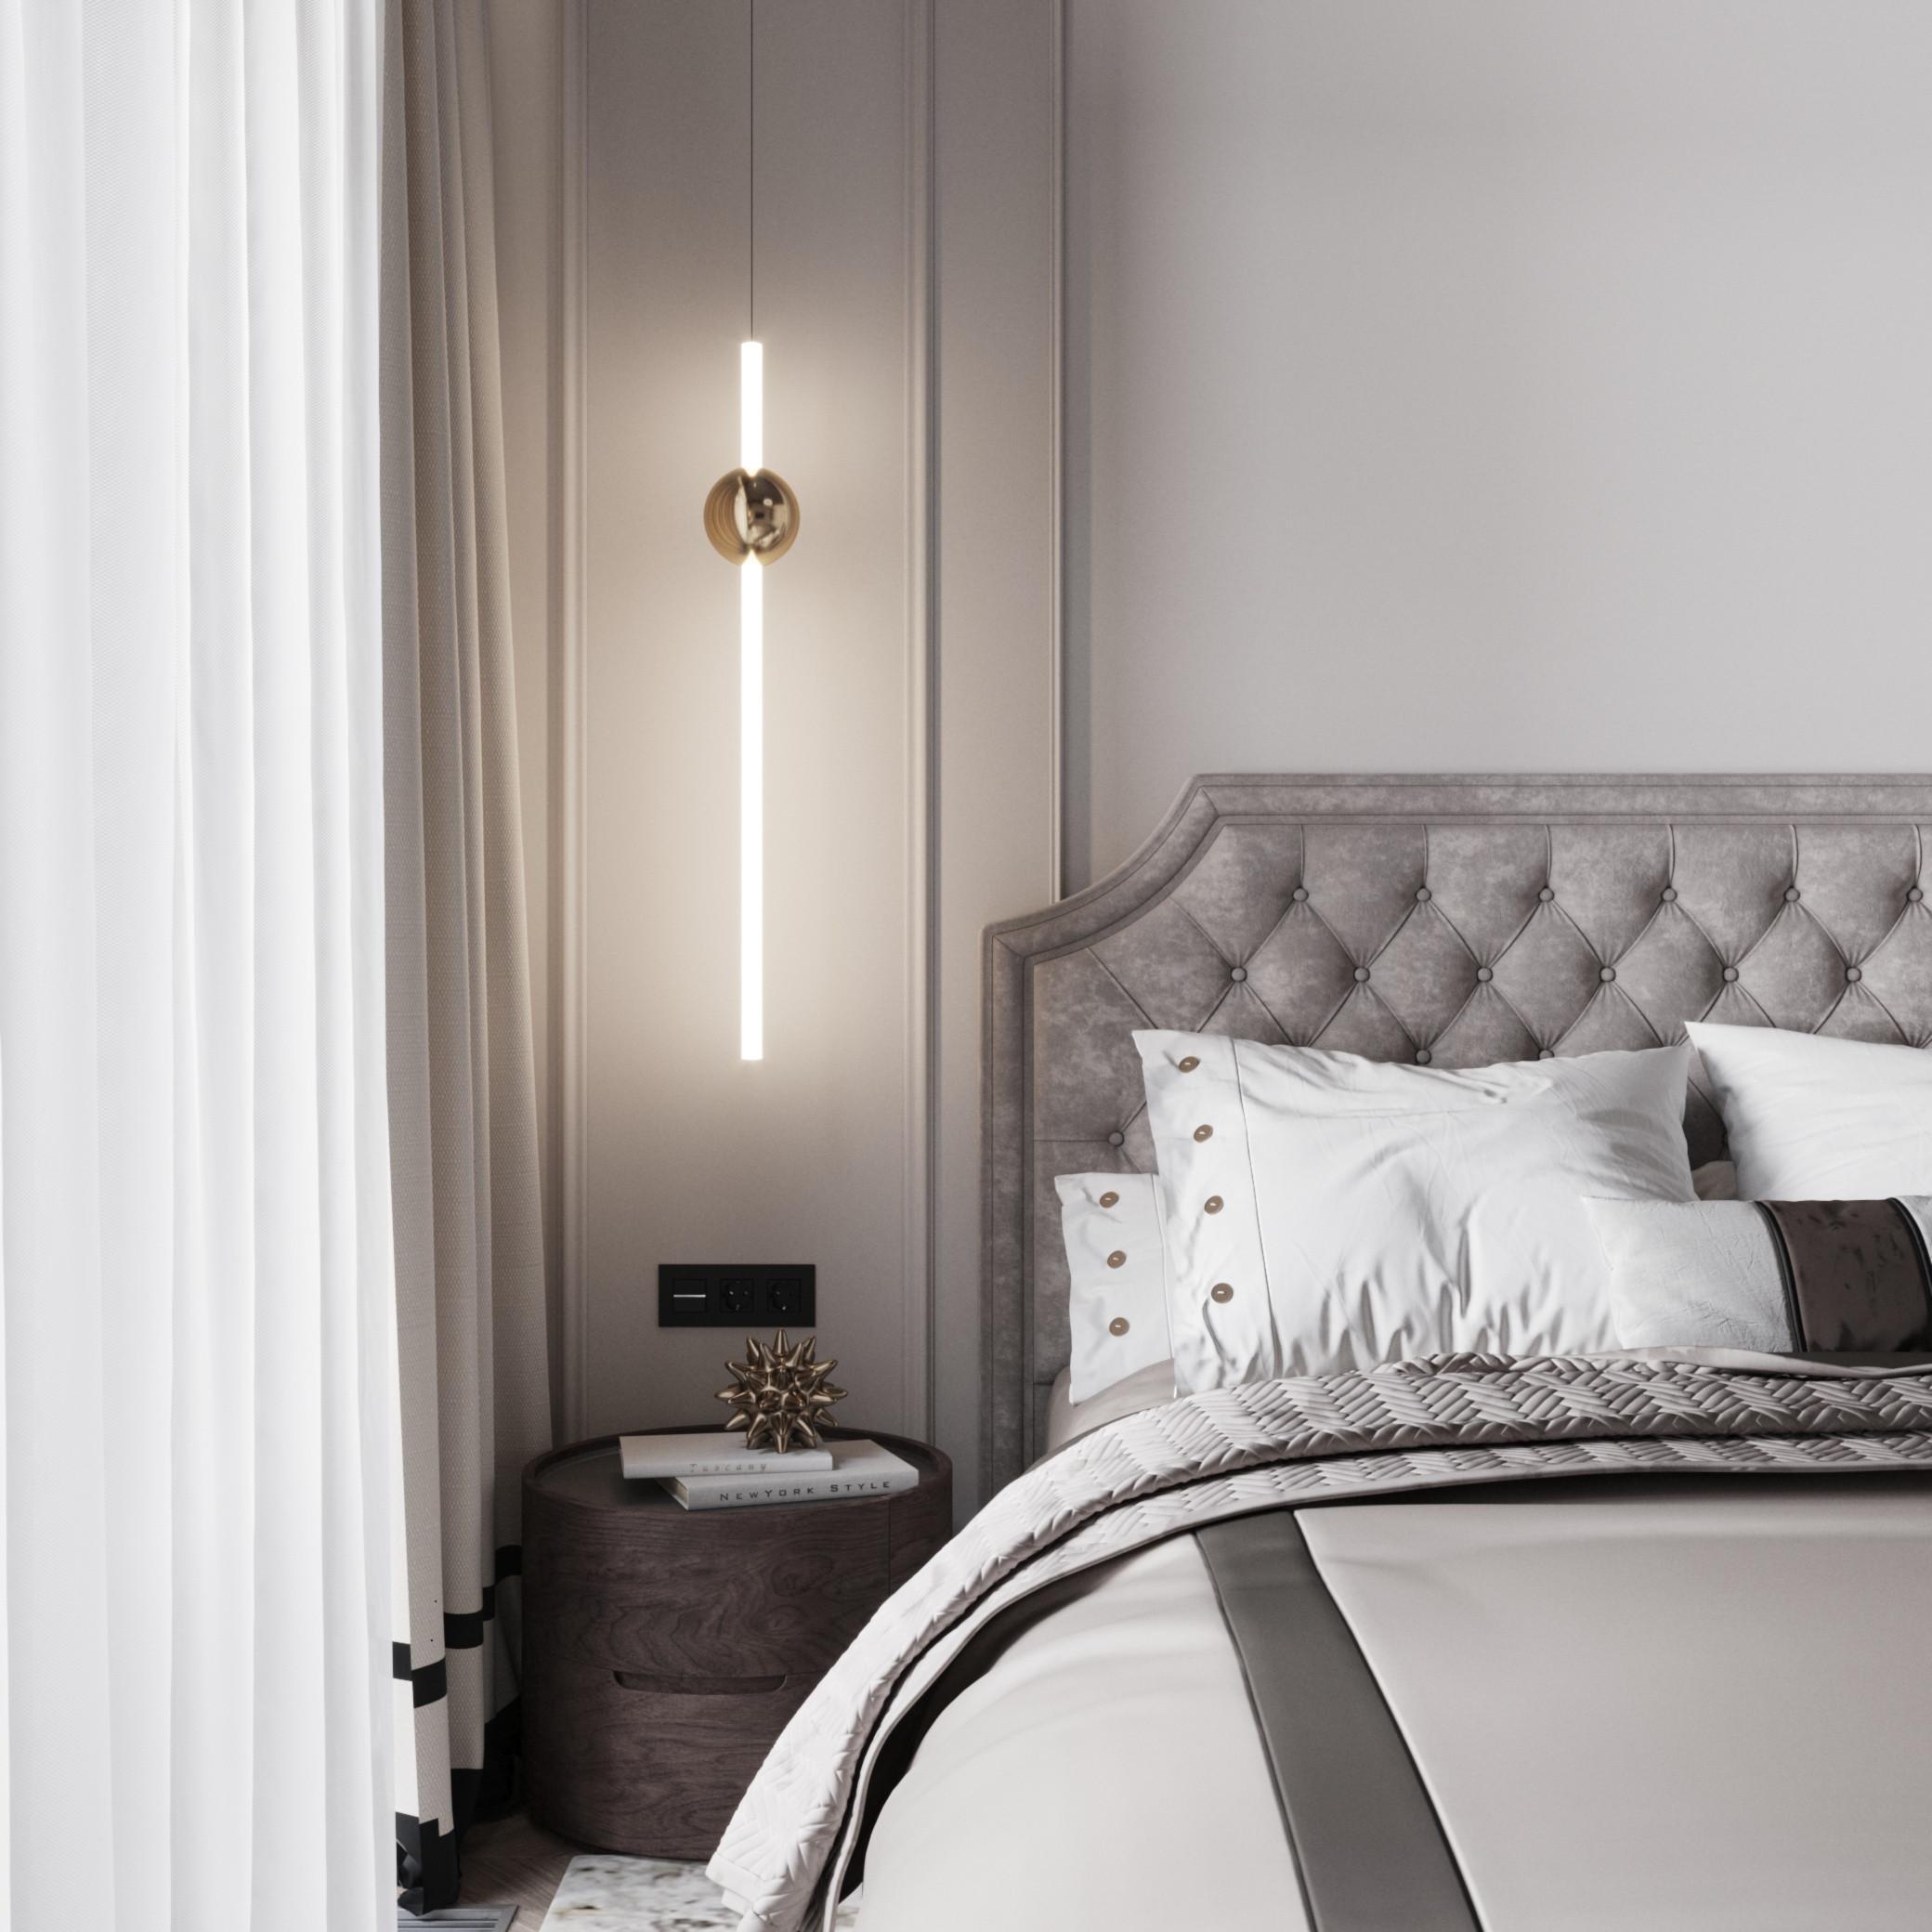 Интерьер спальни с подсветкой настенной и светильниками над кроватью в неоклассике